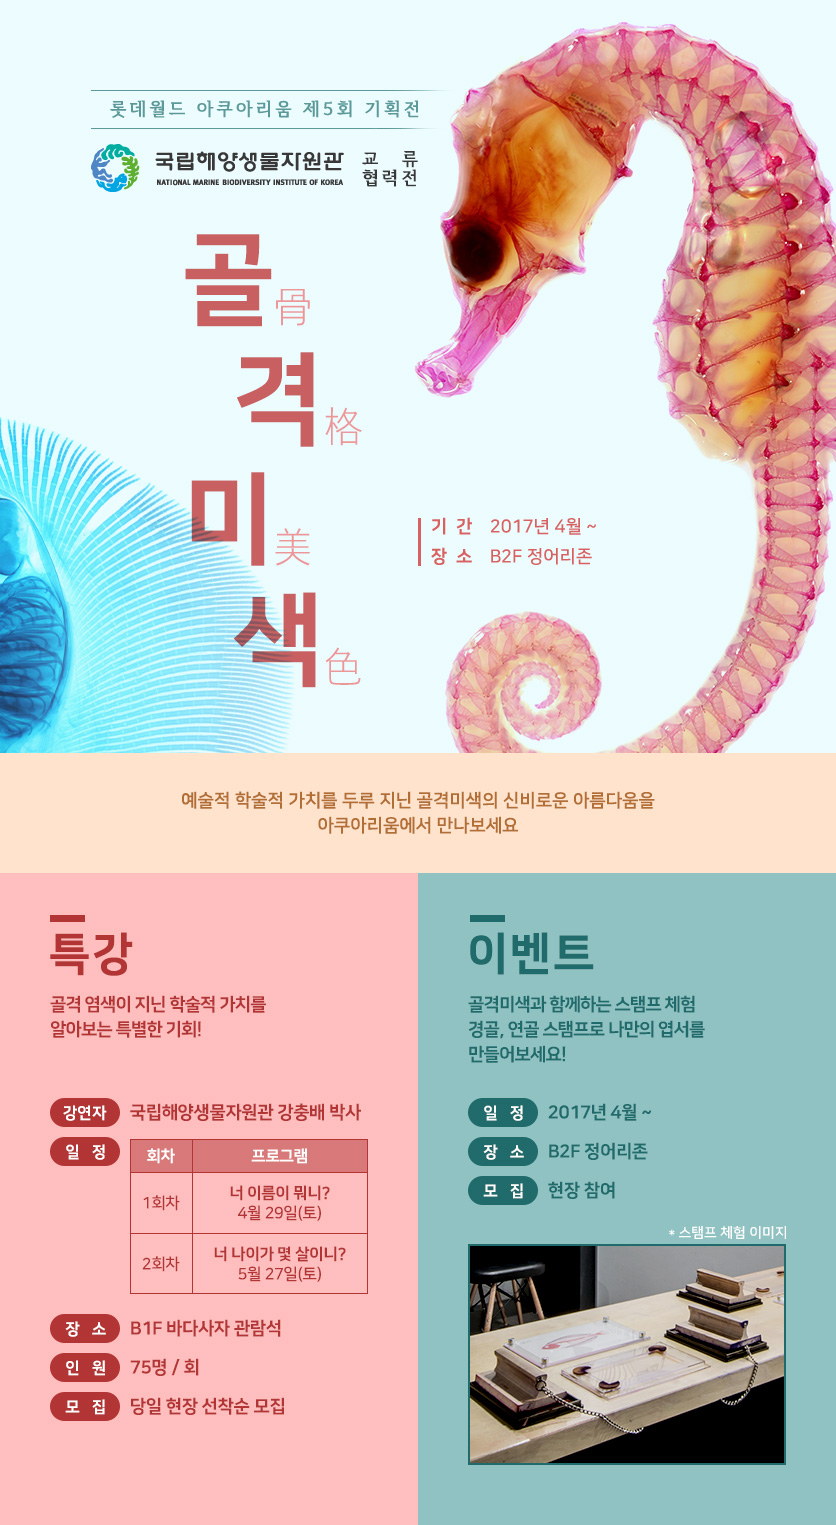 롯데월드 아쿠아리움 제 5회 기획전 '골격미색' 국립해양생물자원관 교류 협력전